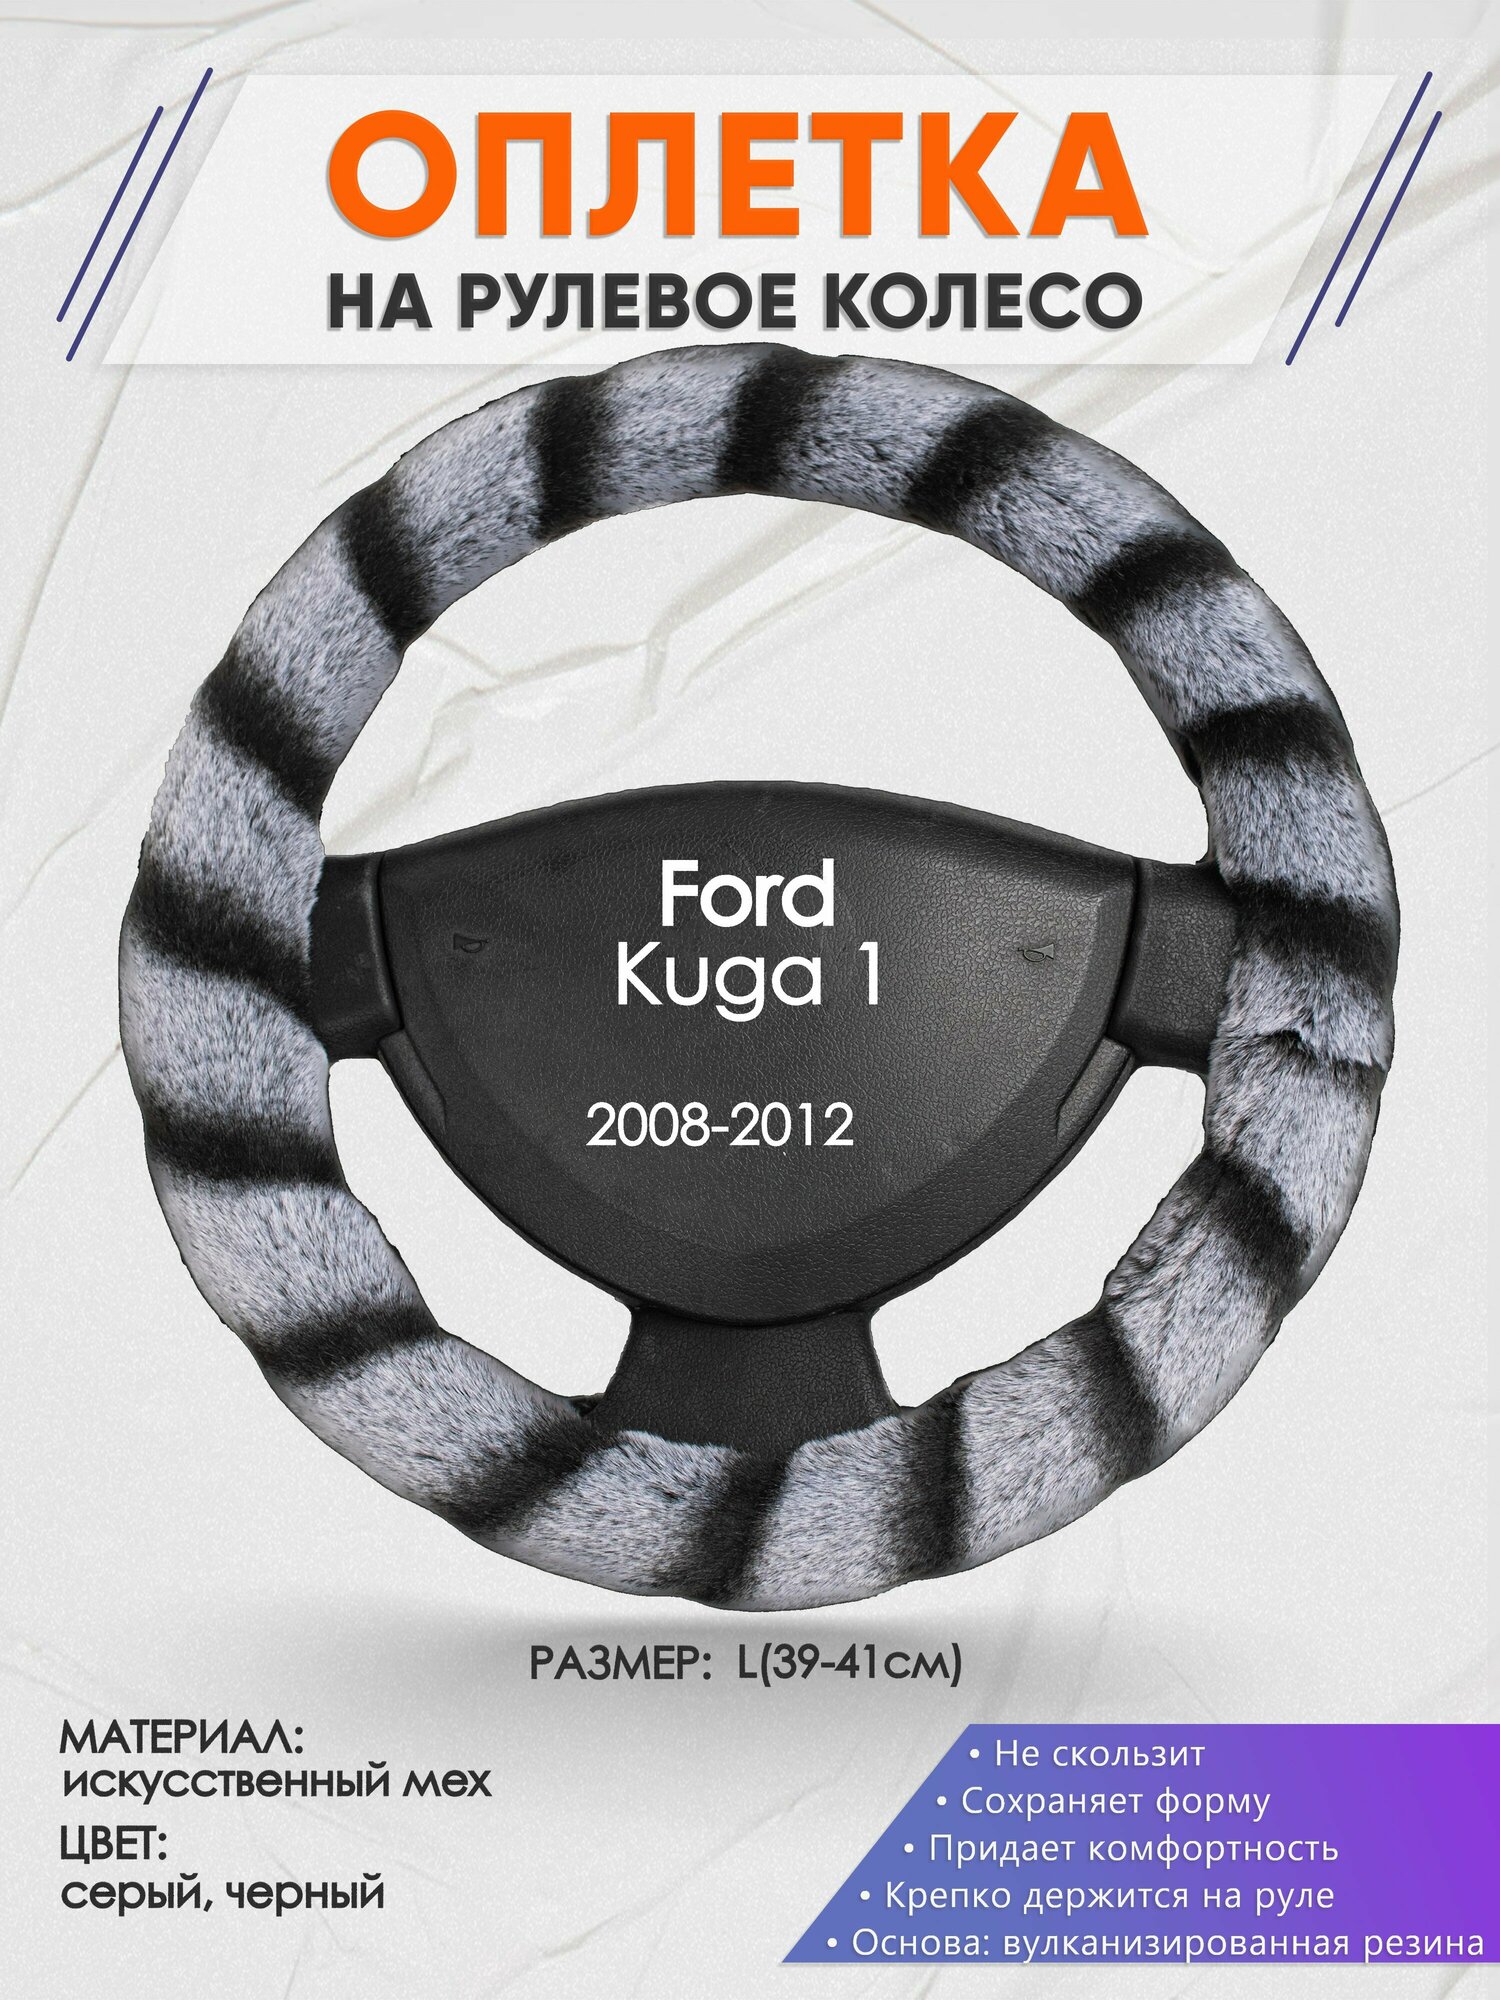 Оплетка на руль для Ford Kuga 1(Форд Куга 1) 2008-2012, L(39-41см), Искусственный мех 41